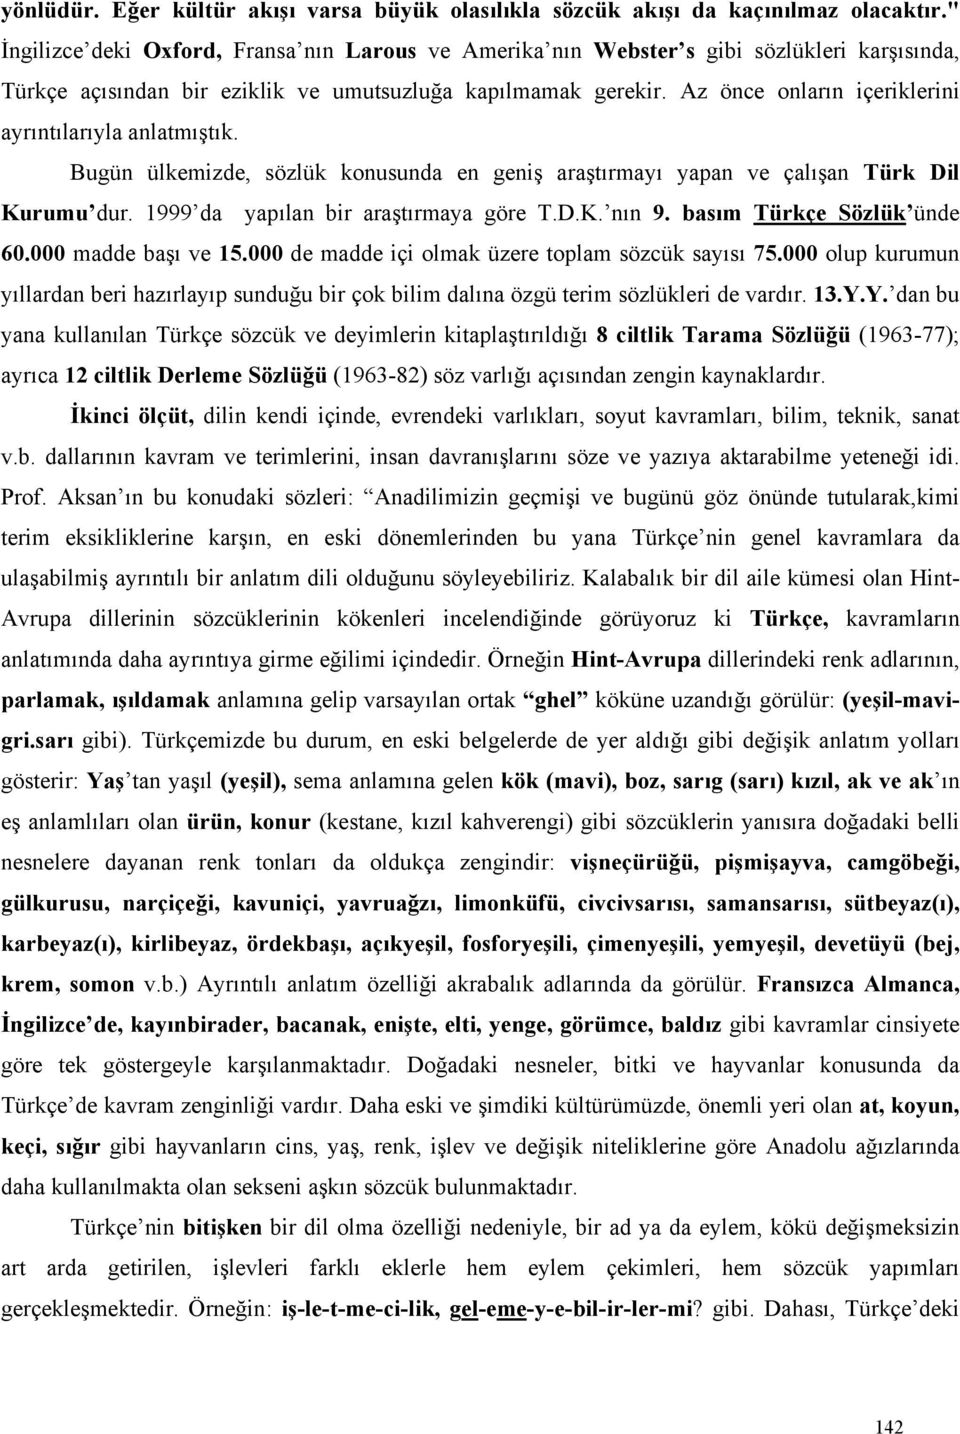 Az önce onların içeriklerini ayrıntılarıyla anlatmıştık. Bugün ülkemizde, sözlük konusunda en geniş araştırmayı yapan ve çalışan Türk Dil Kurumu dur. 1999 da yapılan bir araştırmaya göre T.D.K. nın 9.